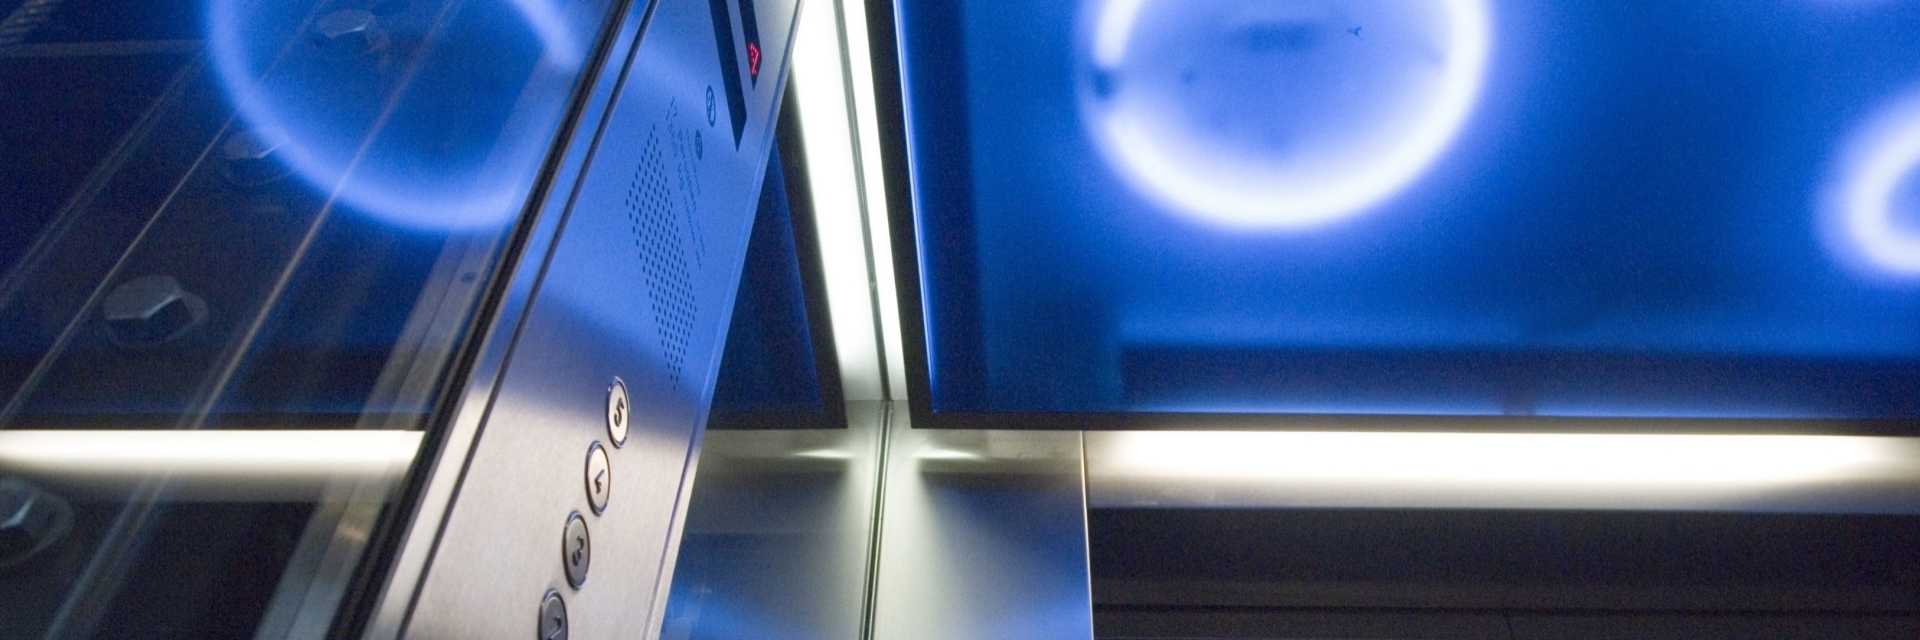 FrontPage Elevator 1